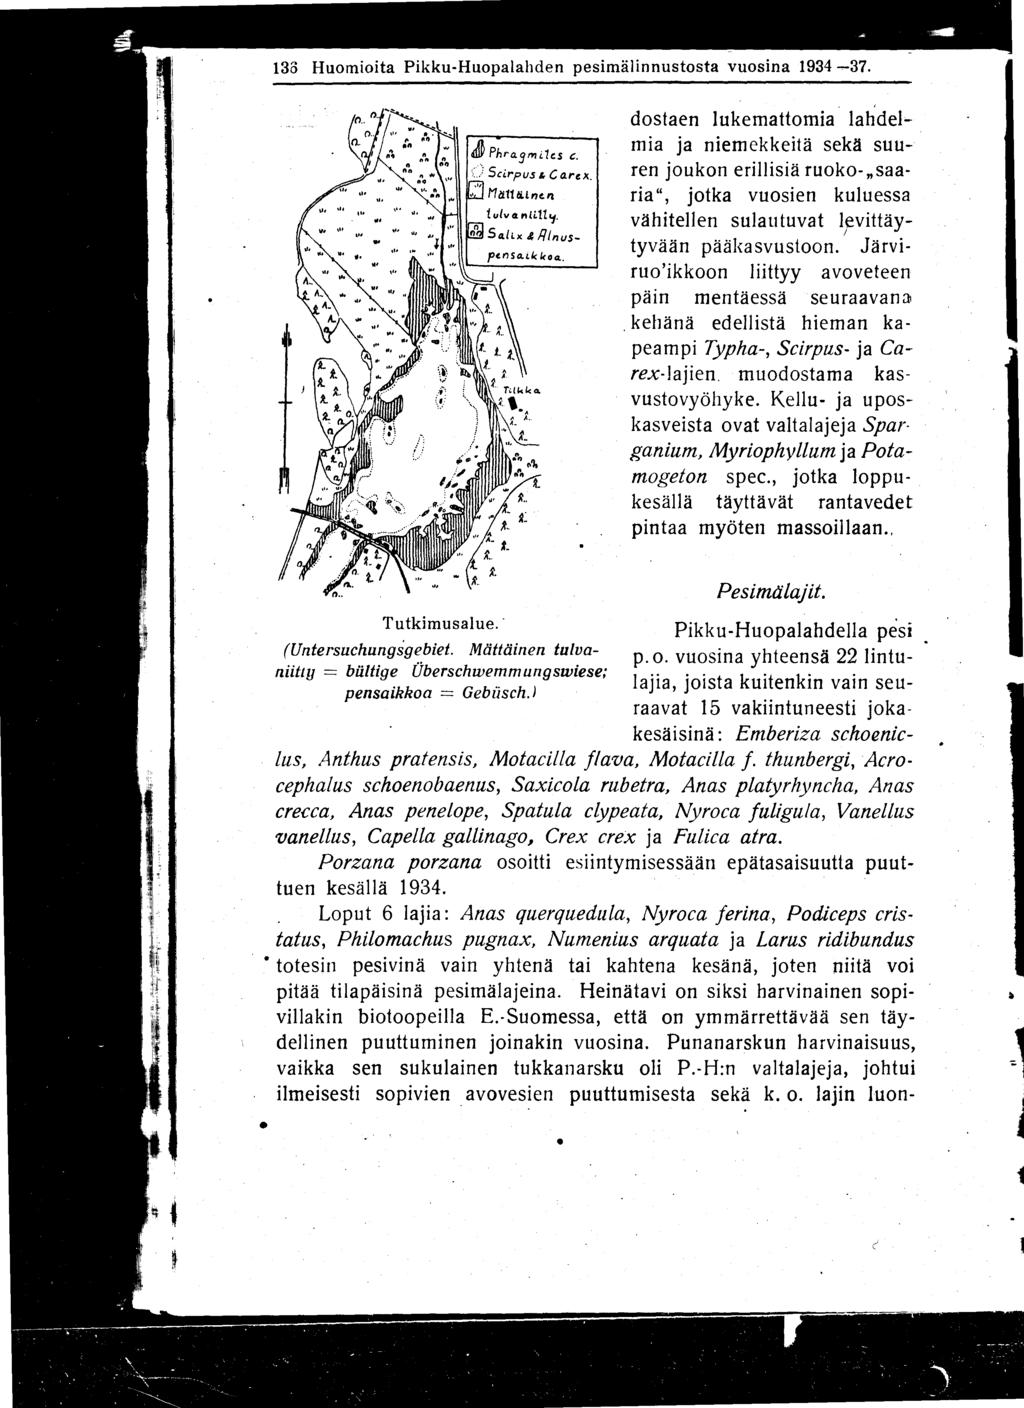 133 Huomioita Pikku-Huopalahden pesimälinnustosta vuosina 1934-37.